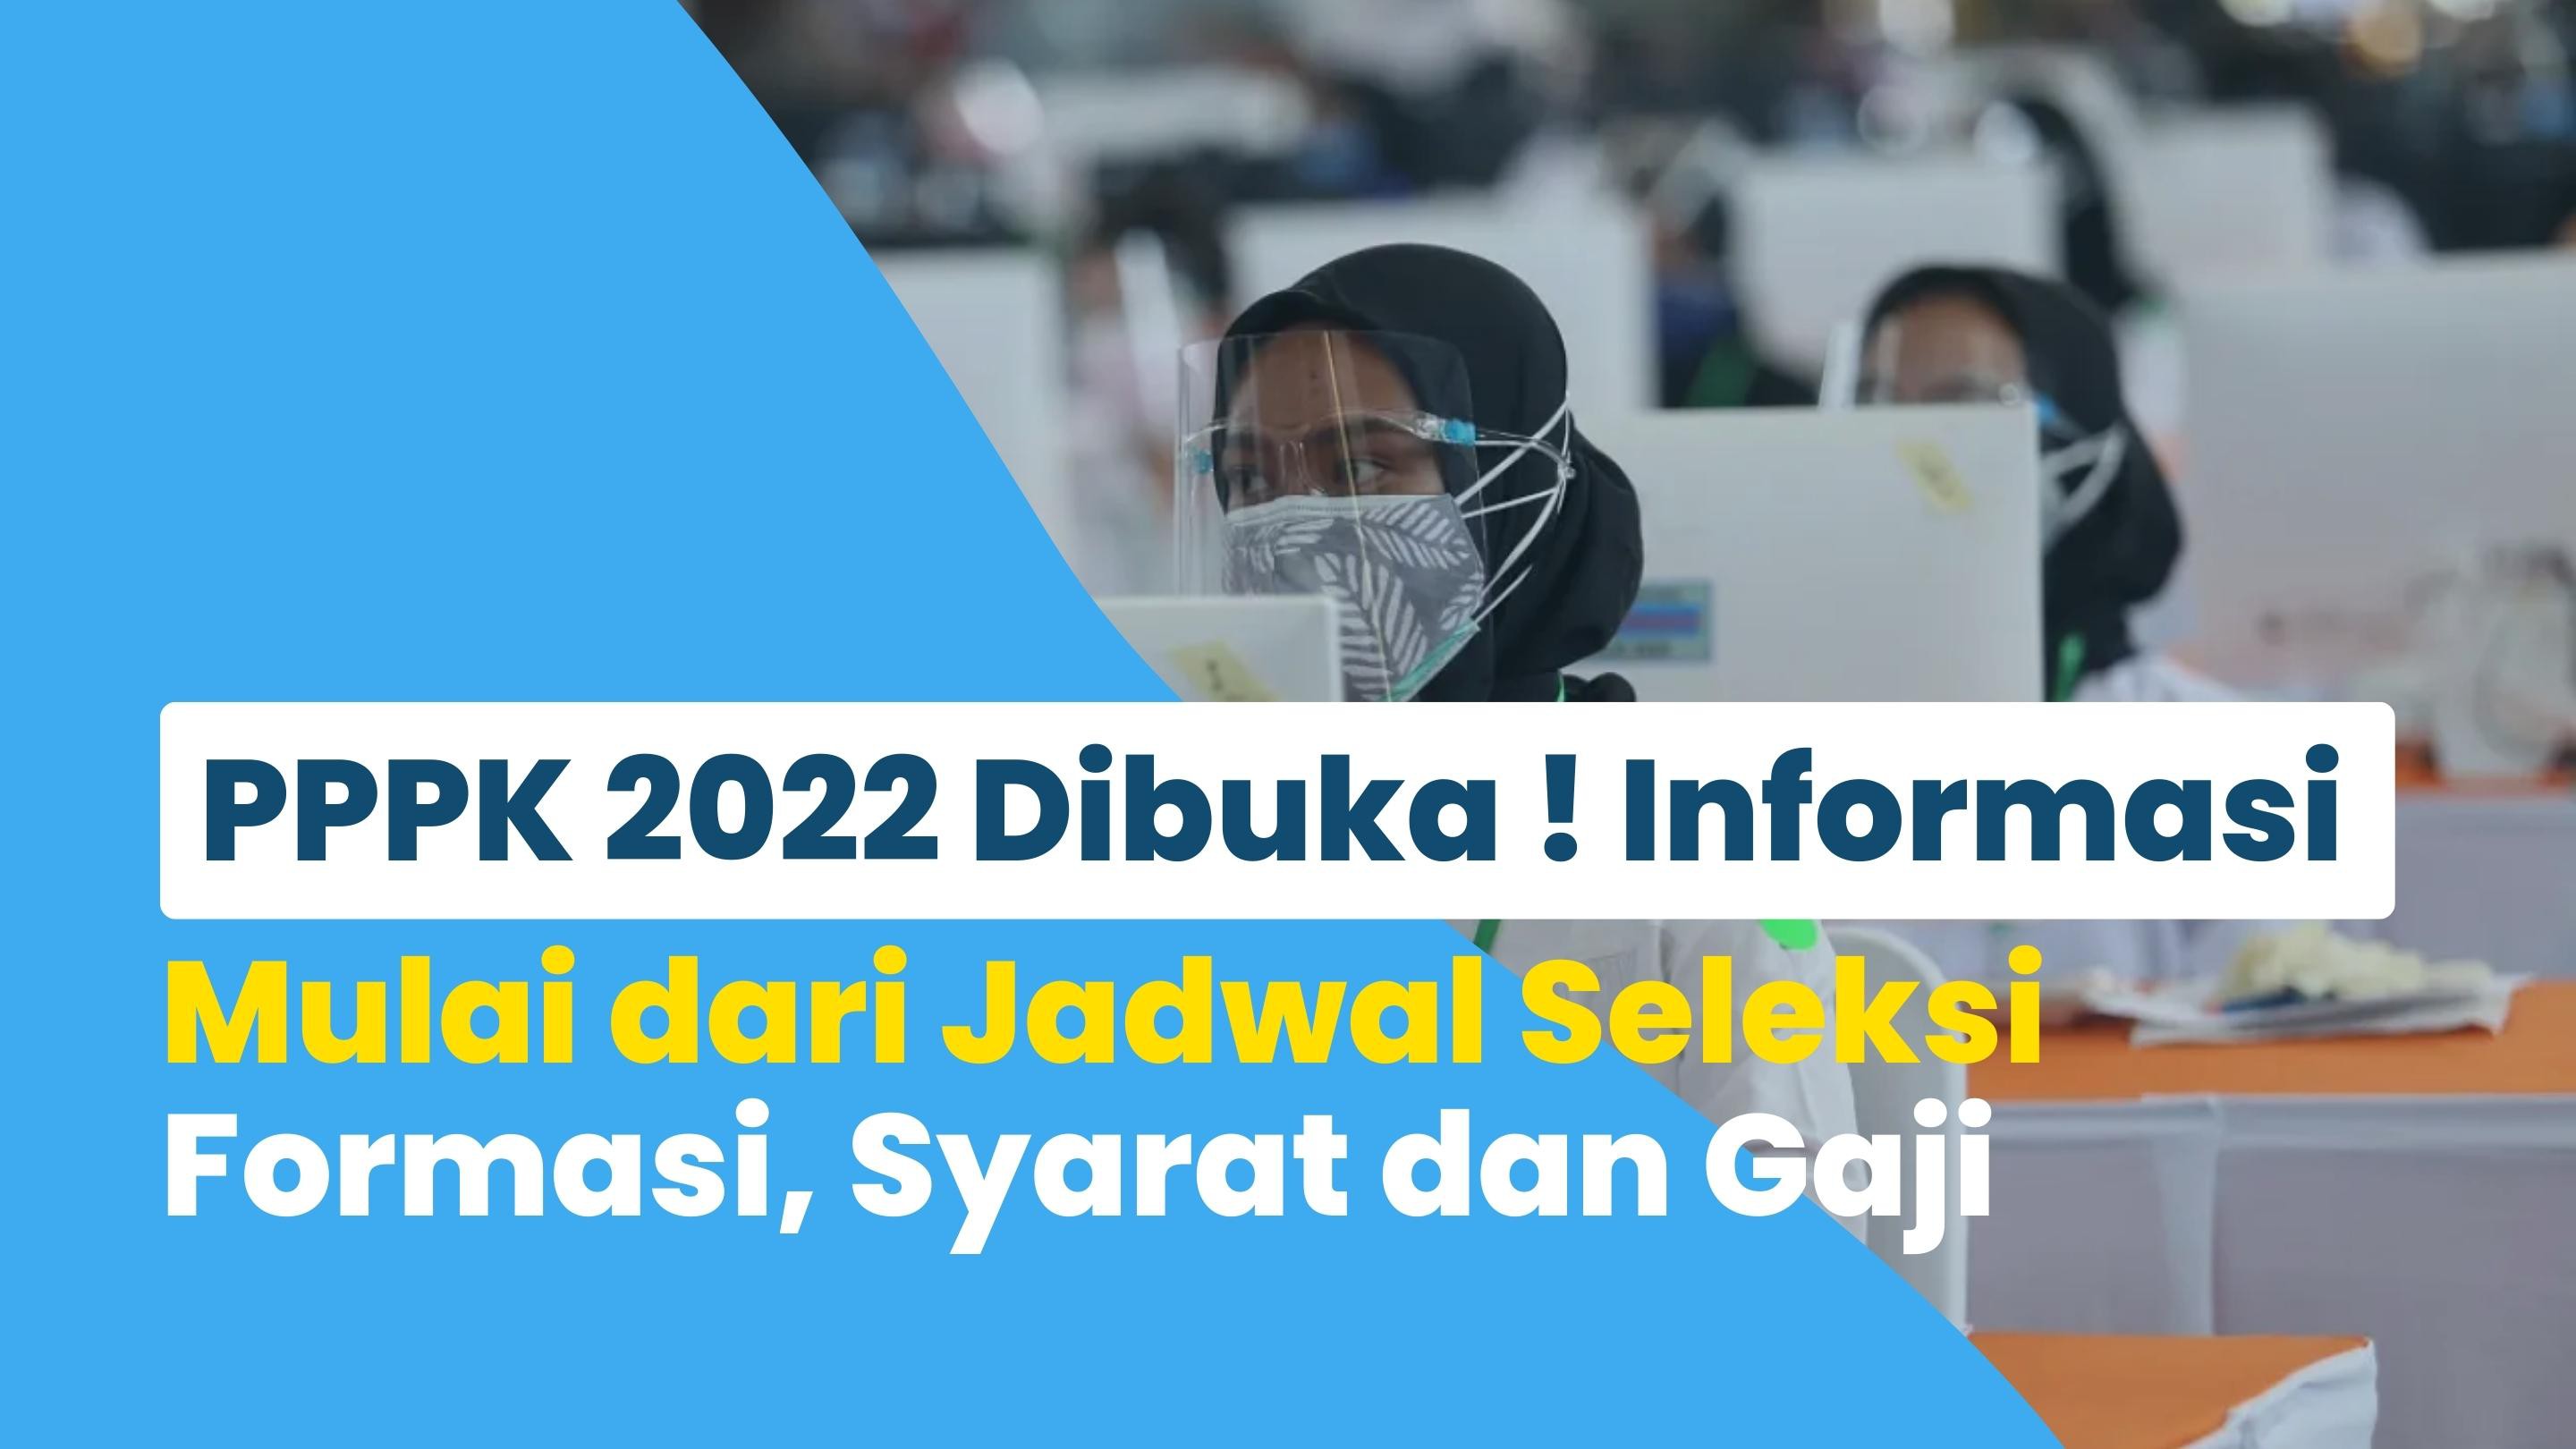 PPPK 2022 Dibuka ! Informasi Tebaru Mulai dari Jadwal Seleksi, Formasi, Syarat dan Gaji